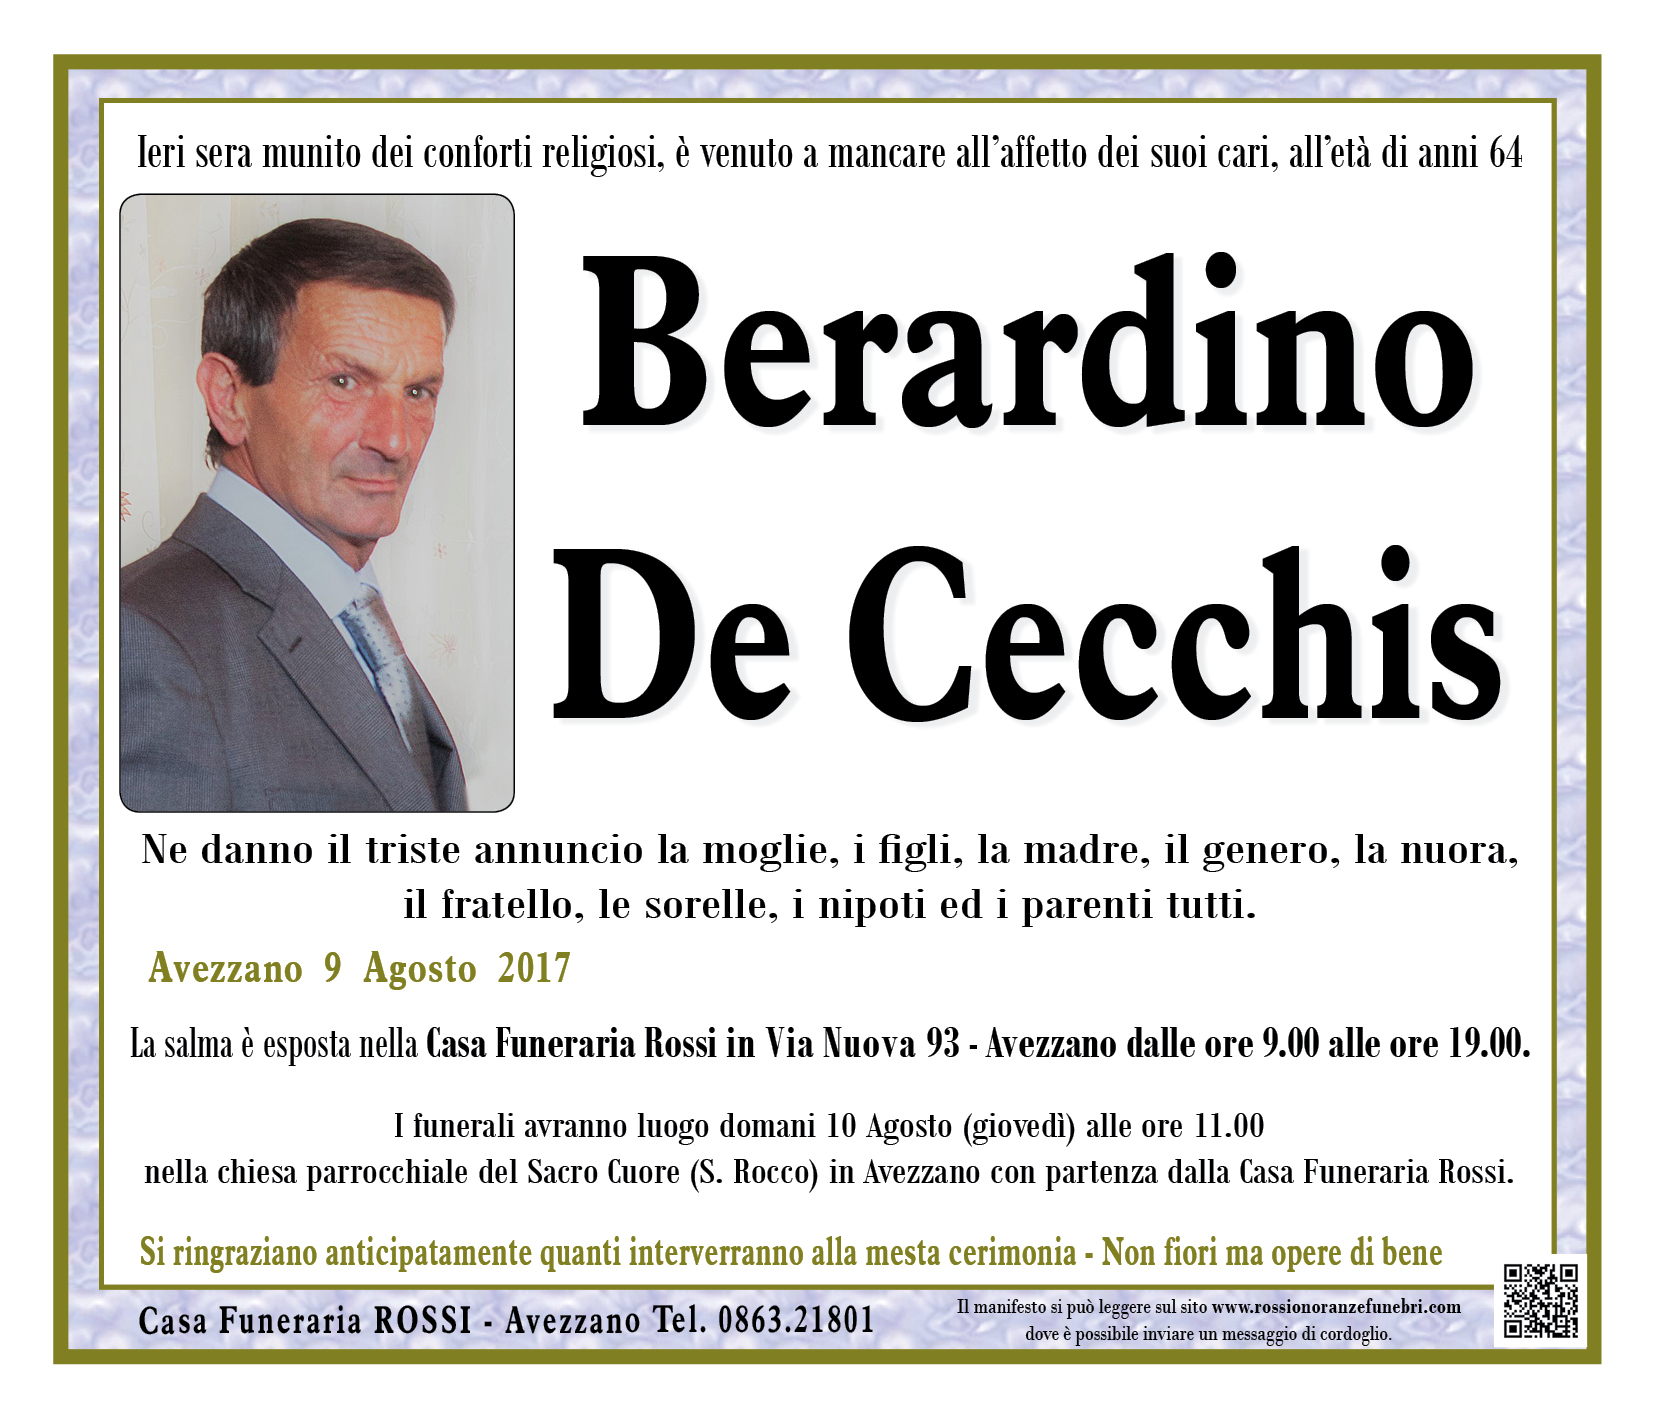 Berardino De Cecchis